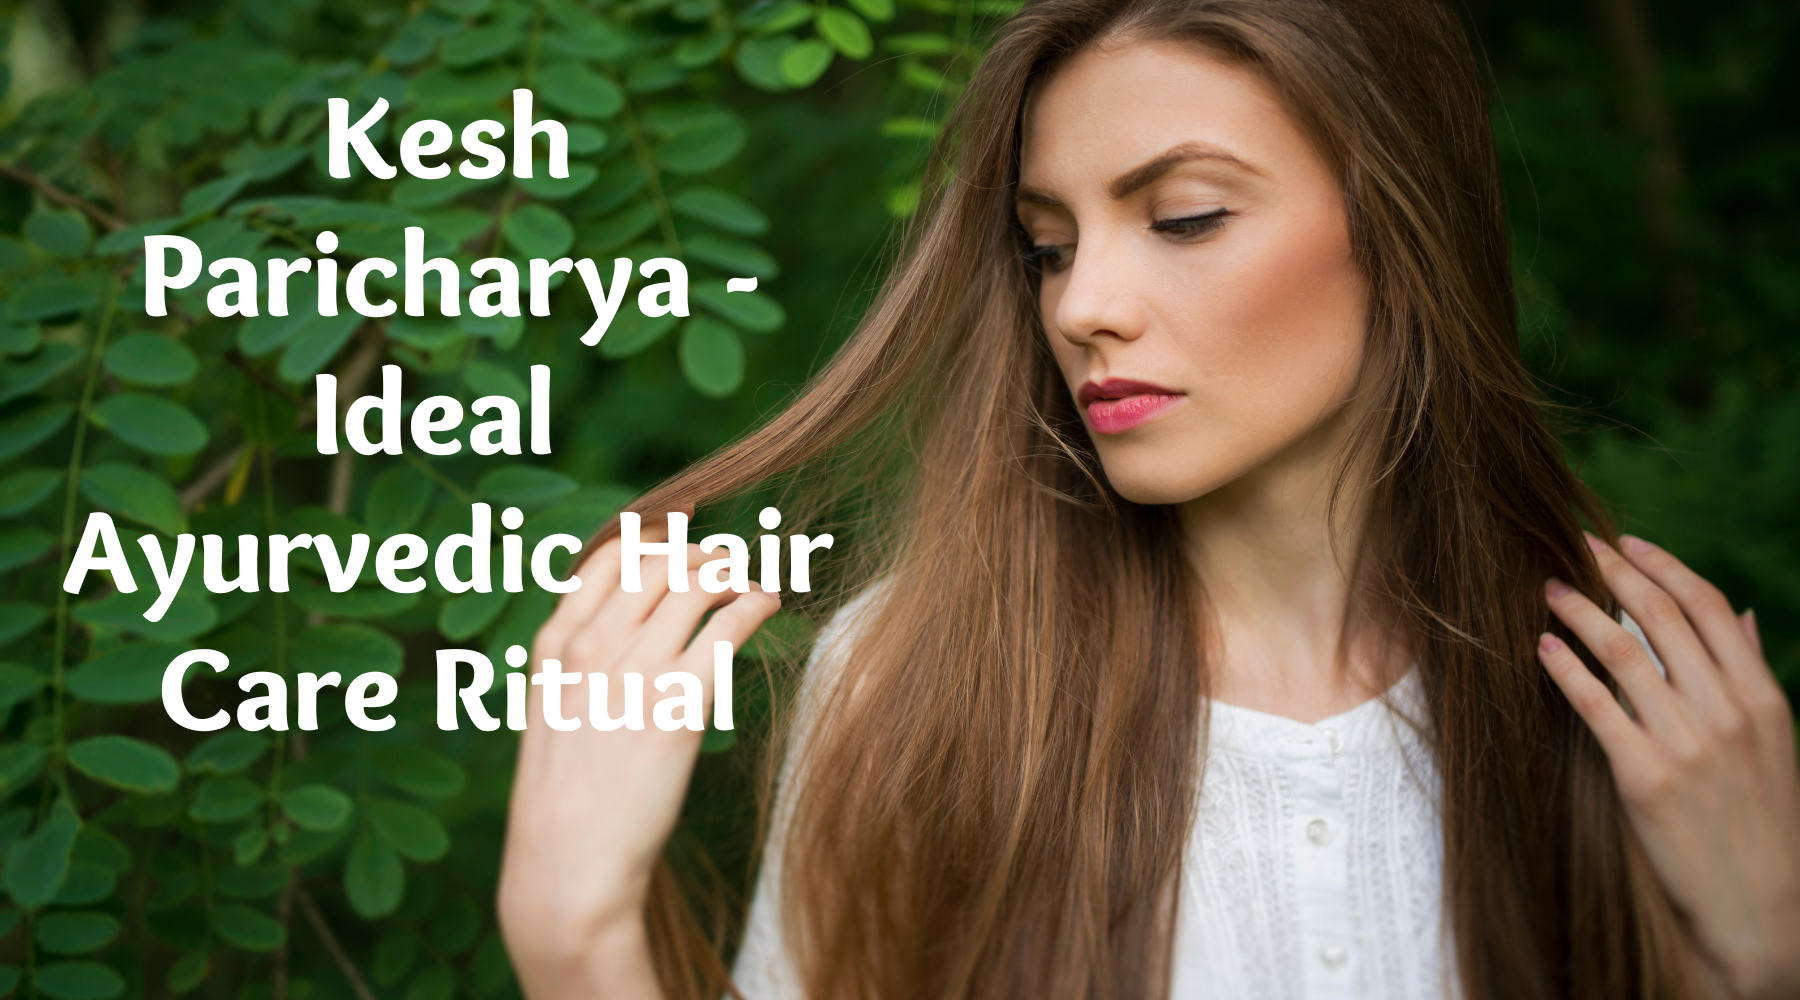 Kesh Paricharya - Ideal Ayurvedic Hair Care Ritual